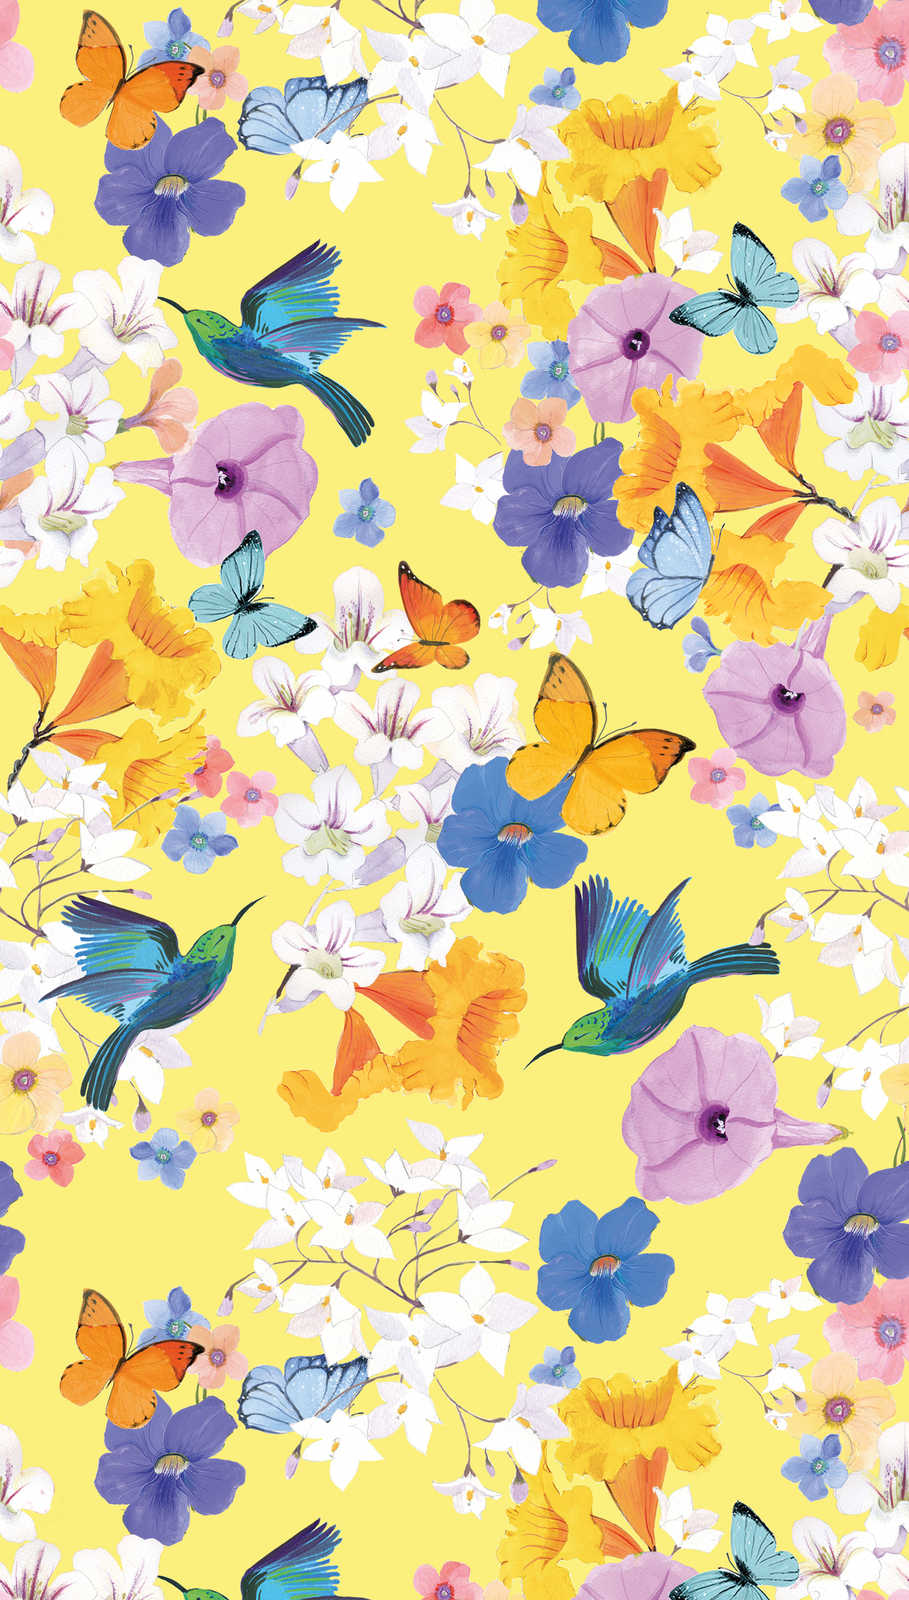             Papel pintado floral con mariposas y pájaros - colorido, amarillo, azul
        